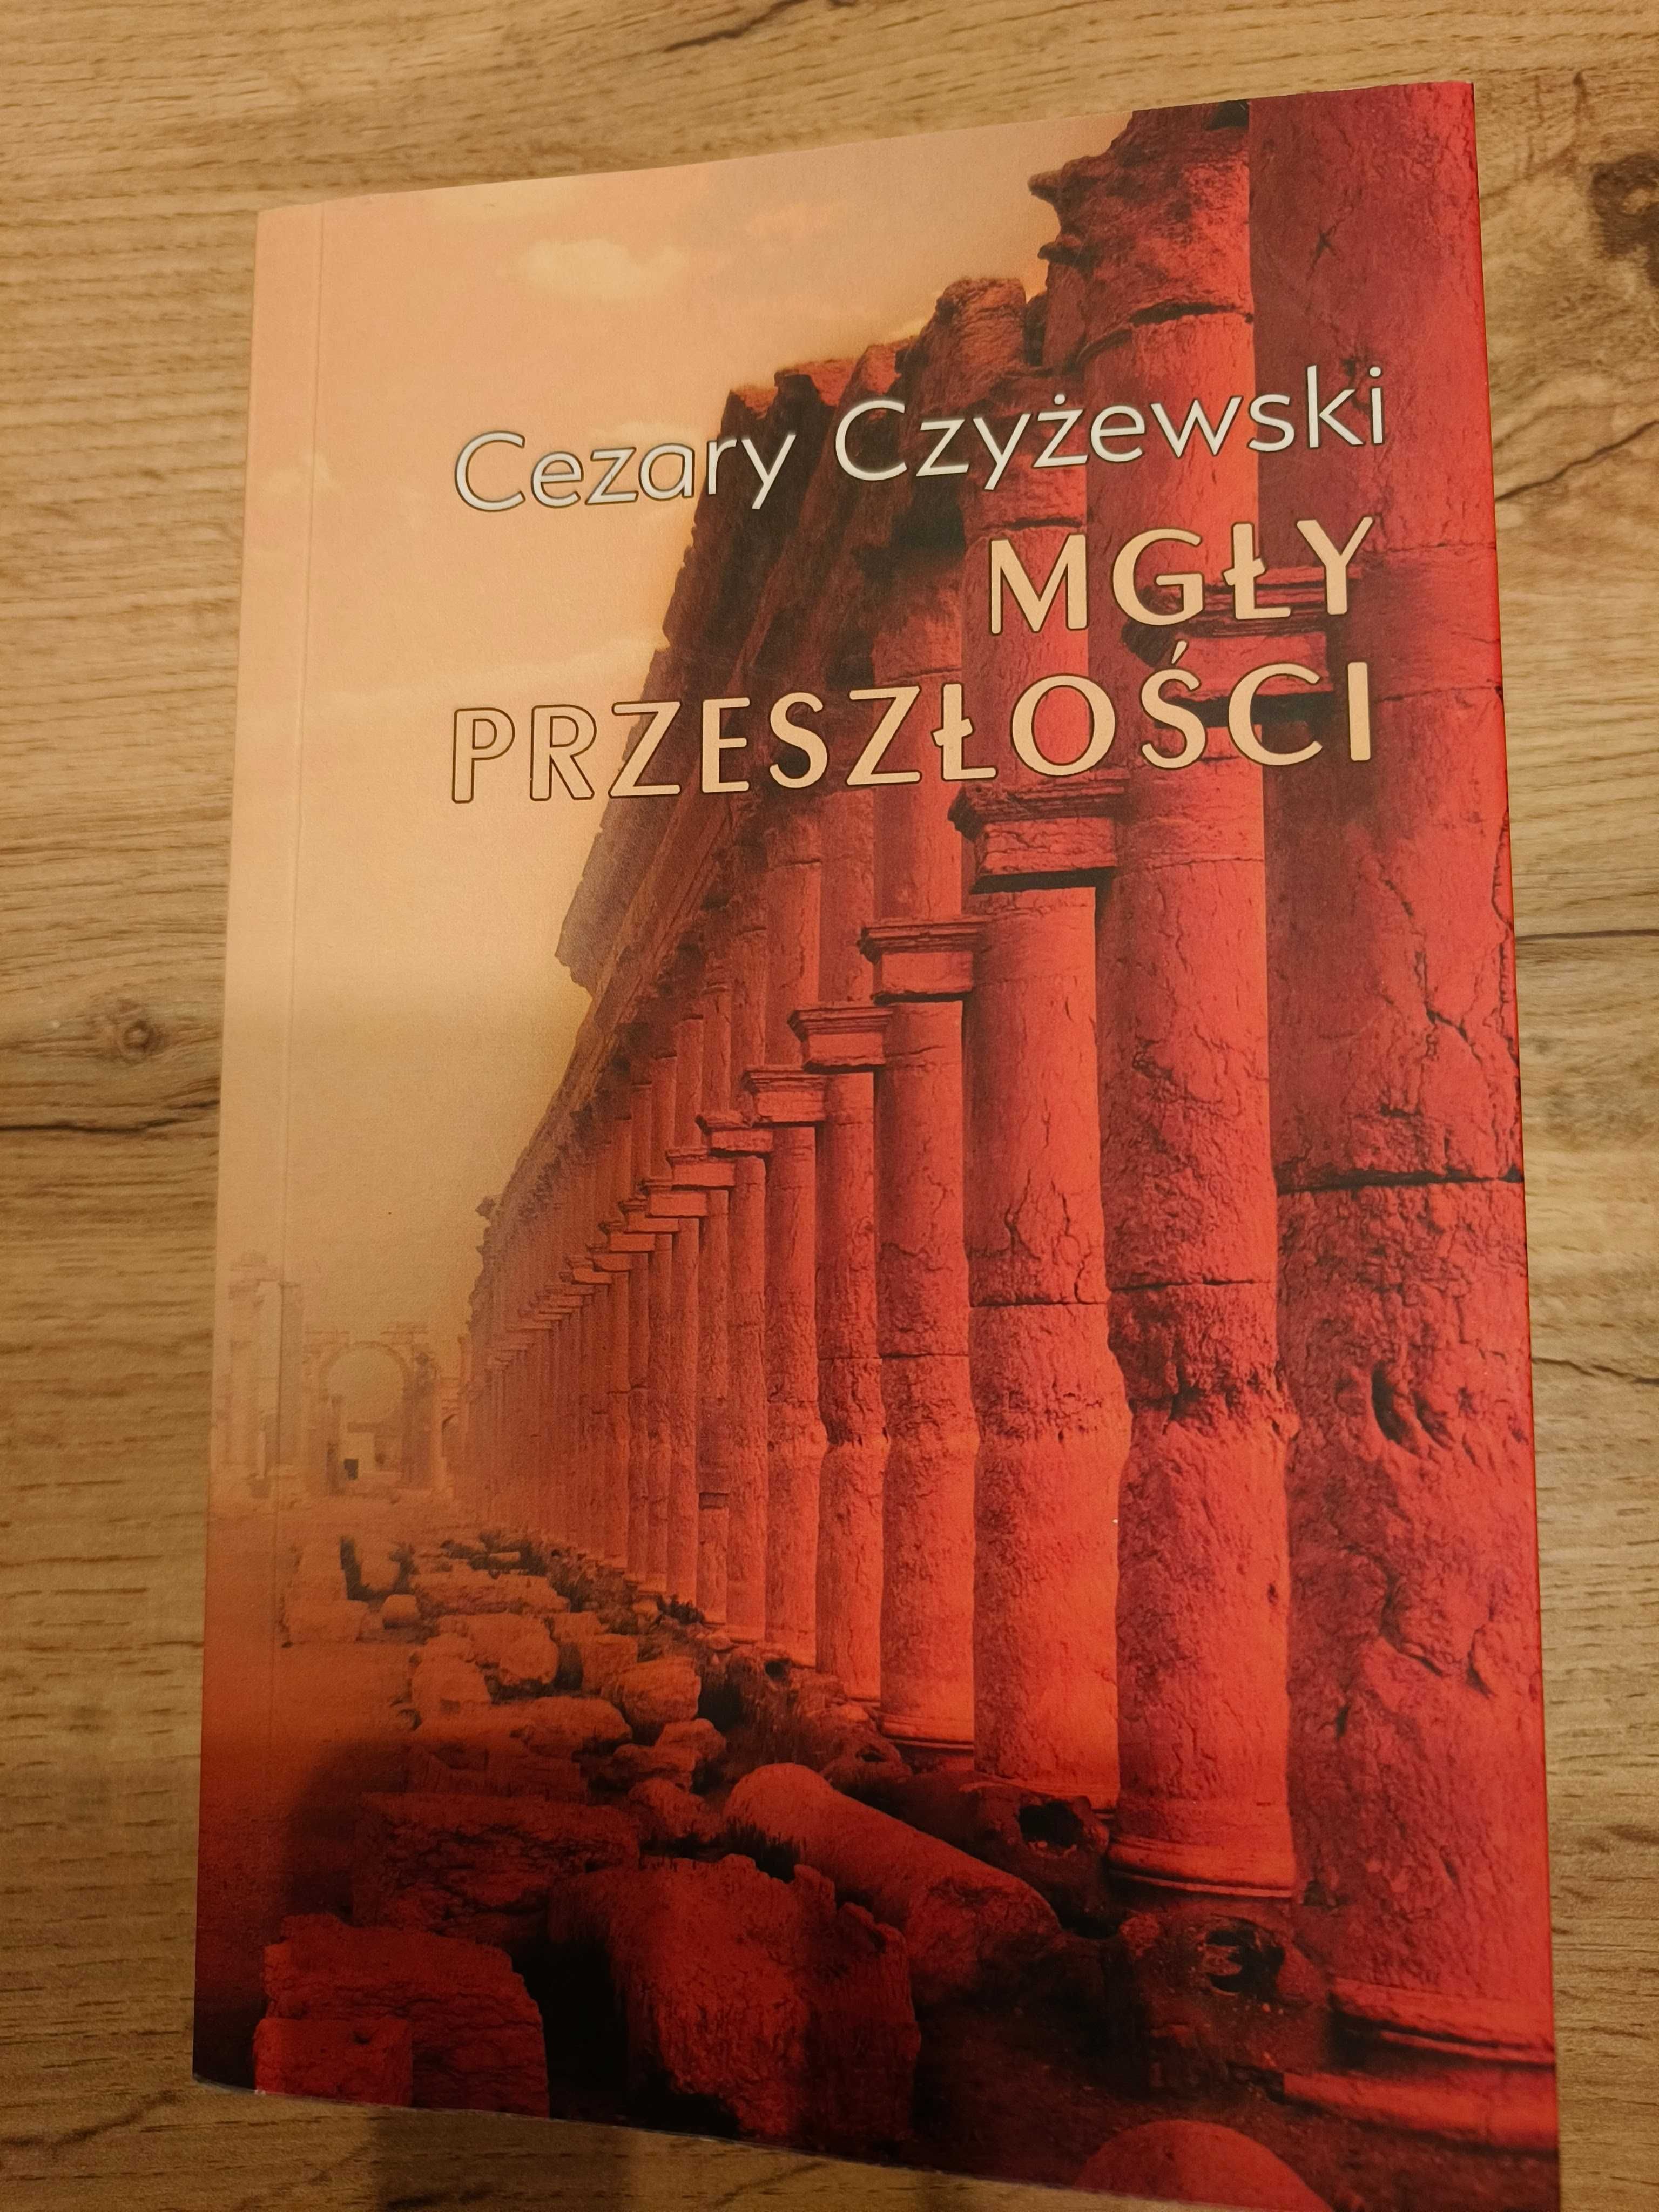 Cezary Czyżewski: Alazza + Mgły przeszłości